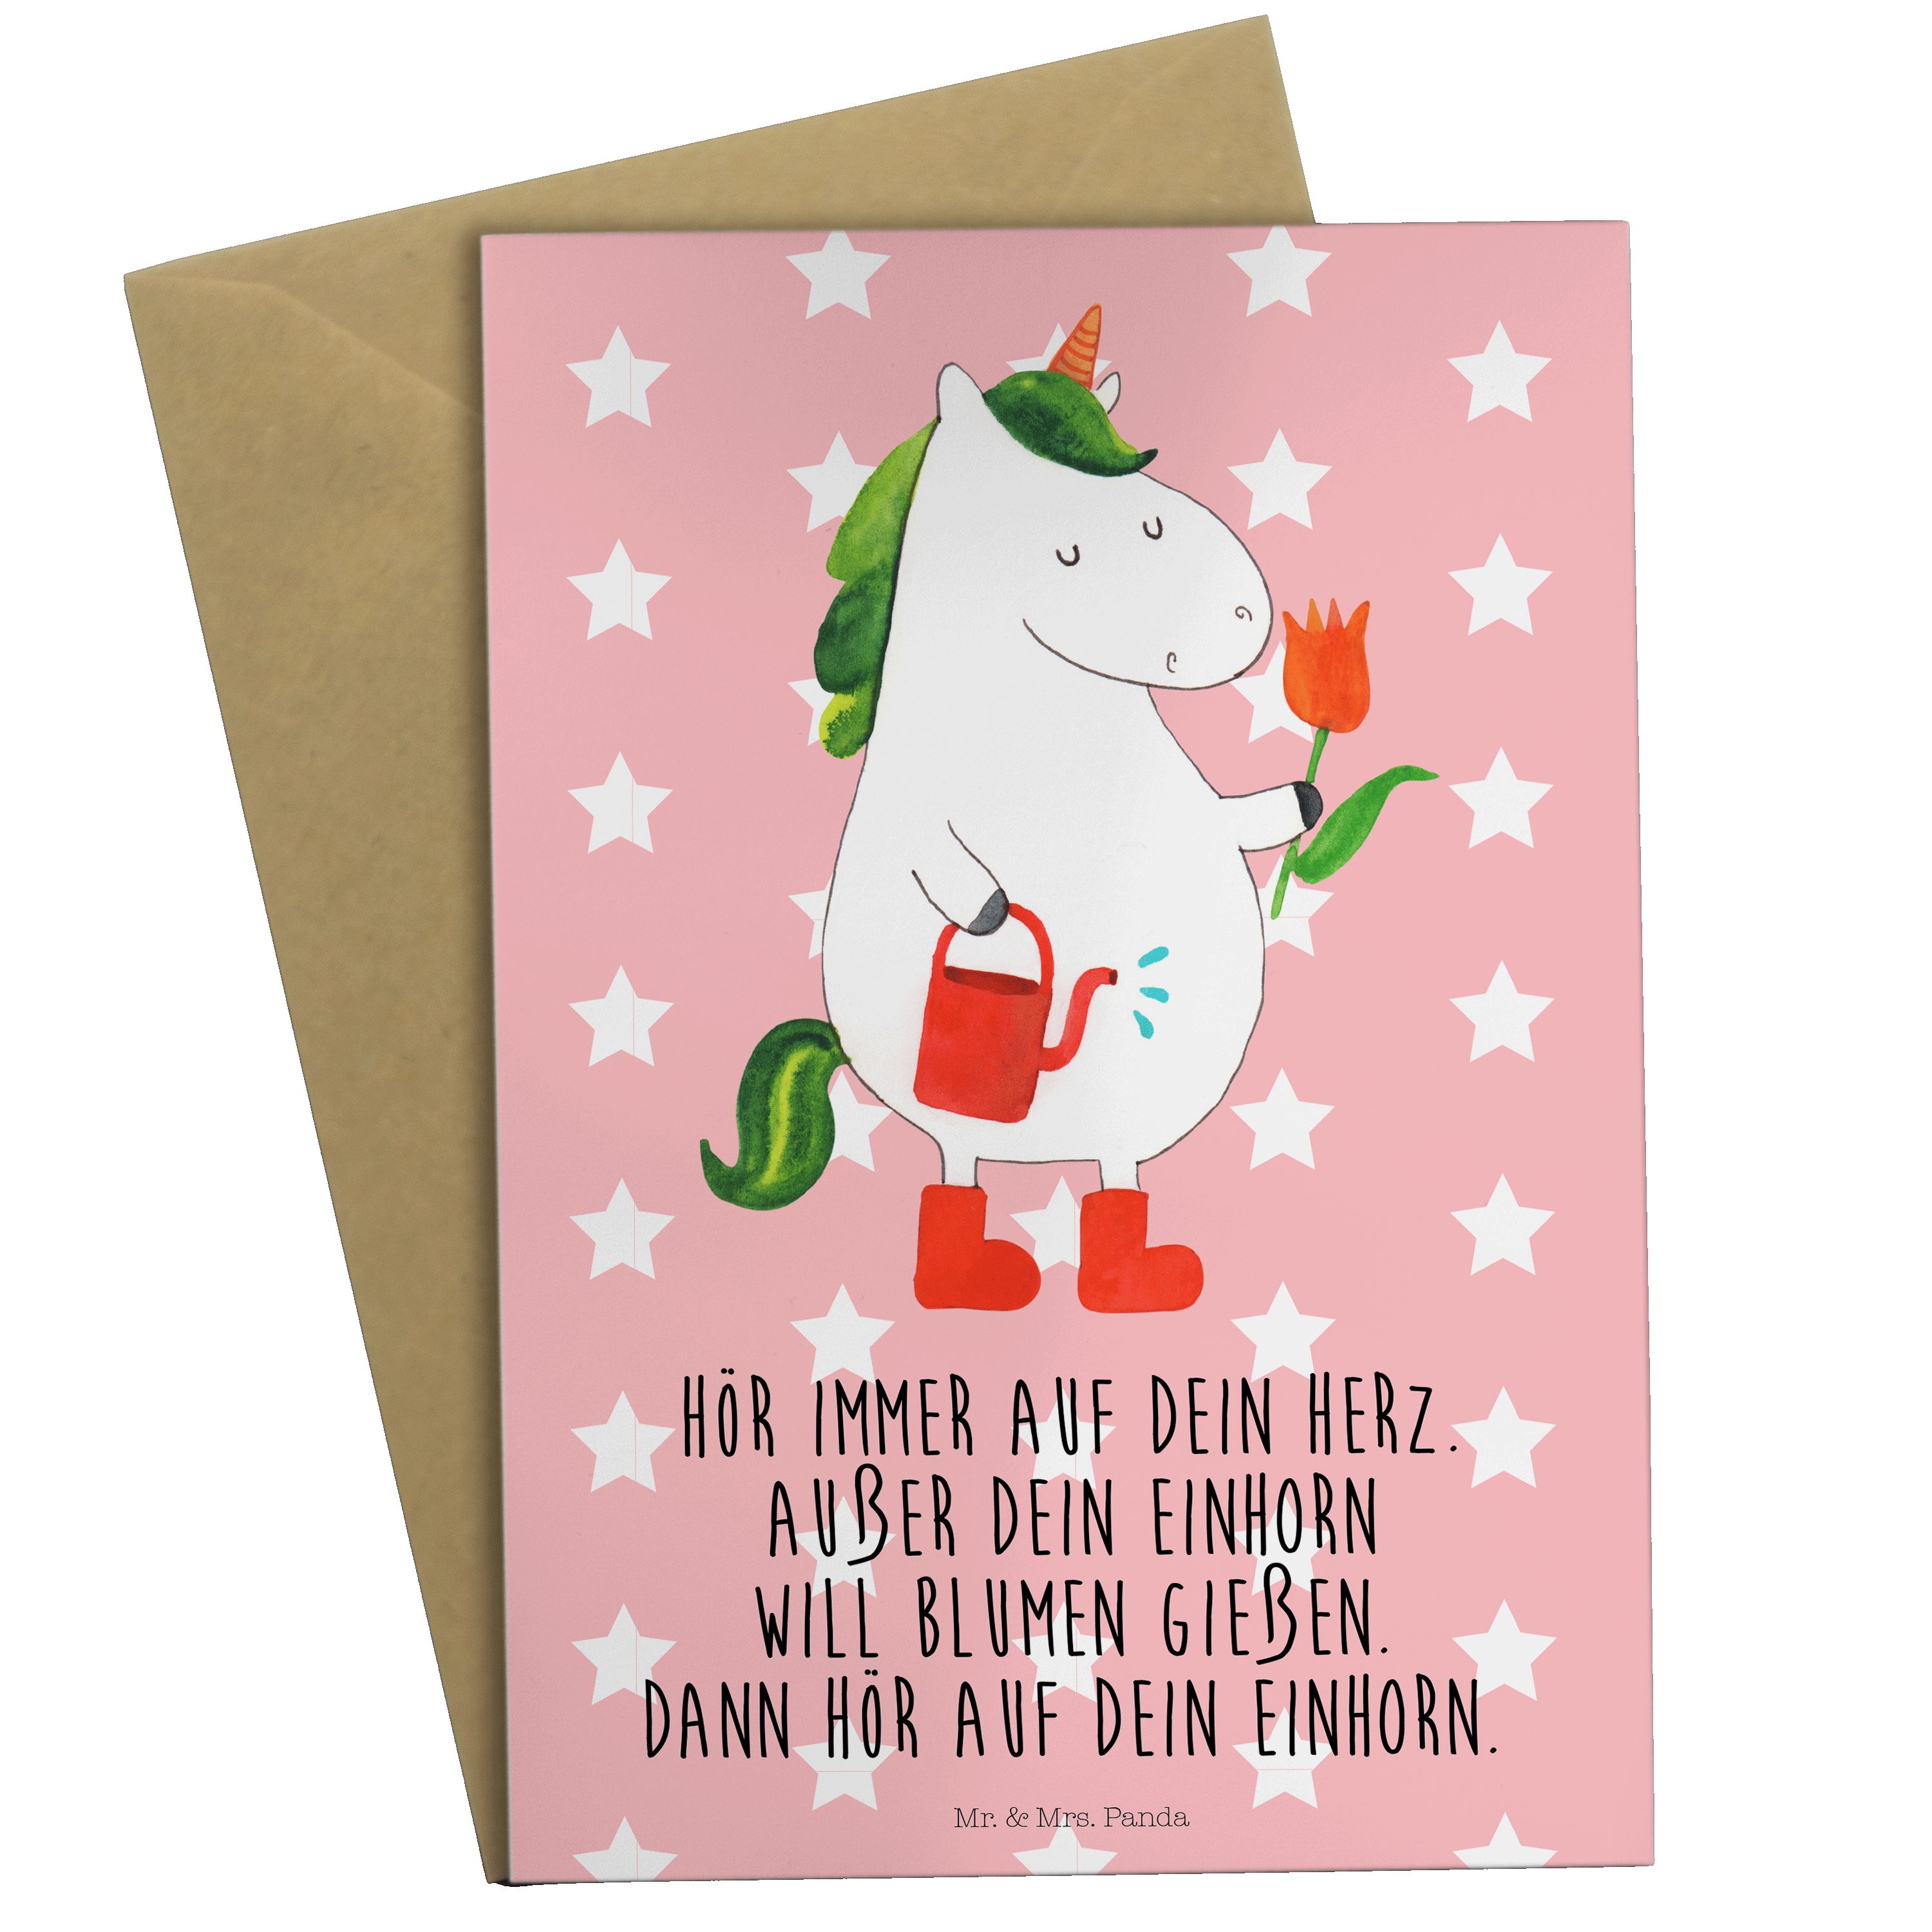 Mr. & Mrs. Panda Grußkarte Einhorn Gärtner - Rot Pastell - Geschenk, Klappkarte, Einladungskarte